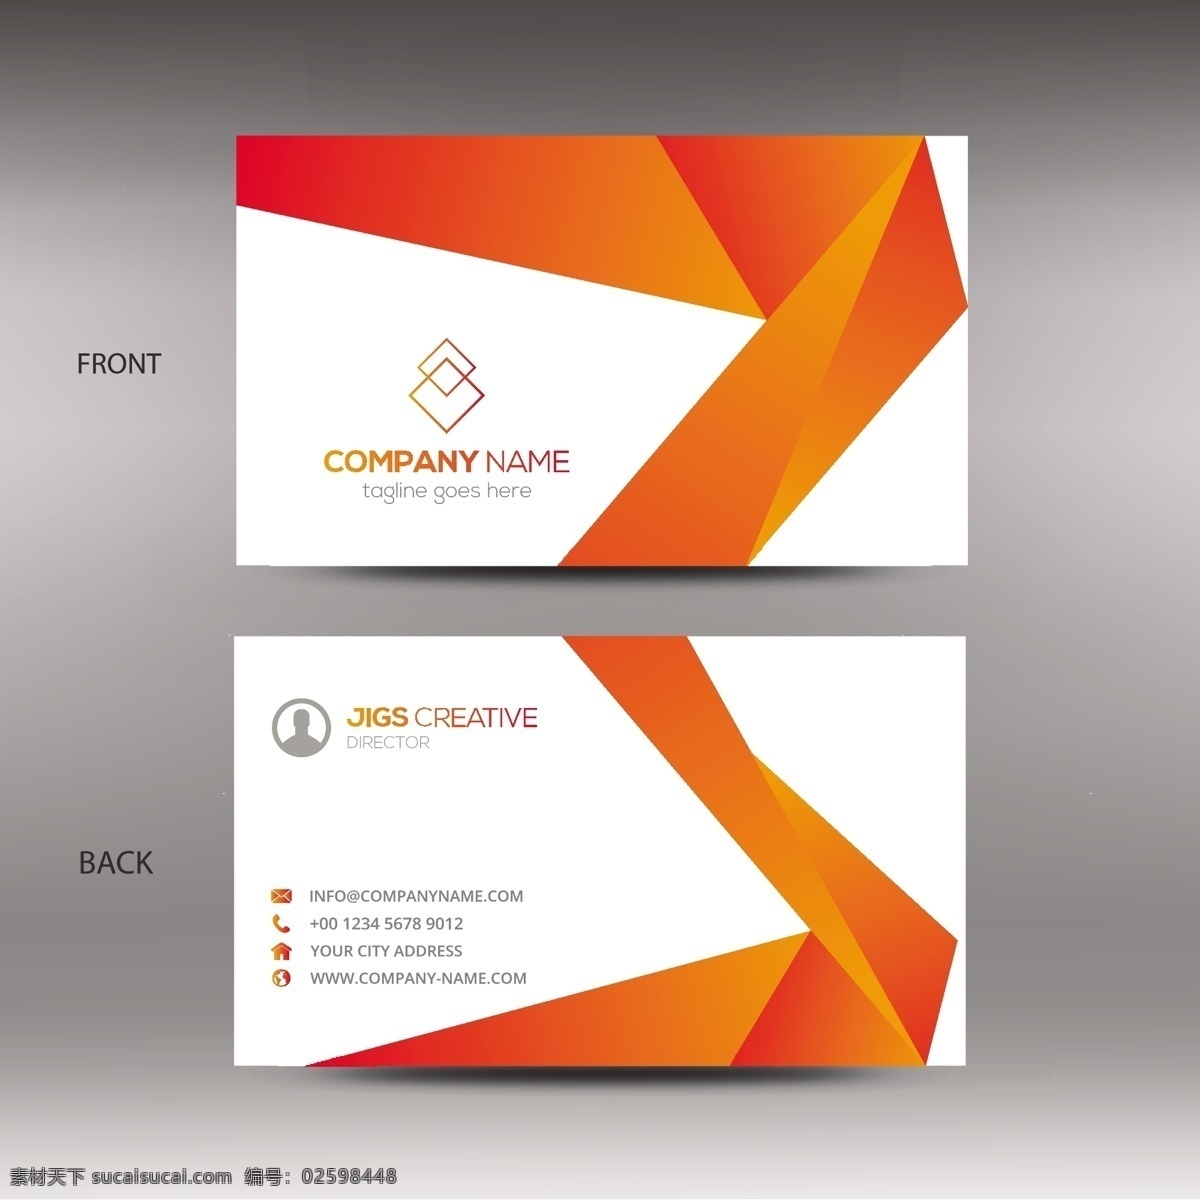 黑白名片 商标 名片 商务 抽象 卡片 模板 办公室 橙色 展示 文具 公司 抽象标志 企业标识 品牌 现代 白色 身份